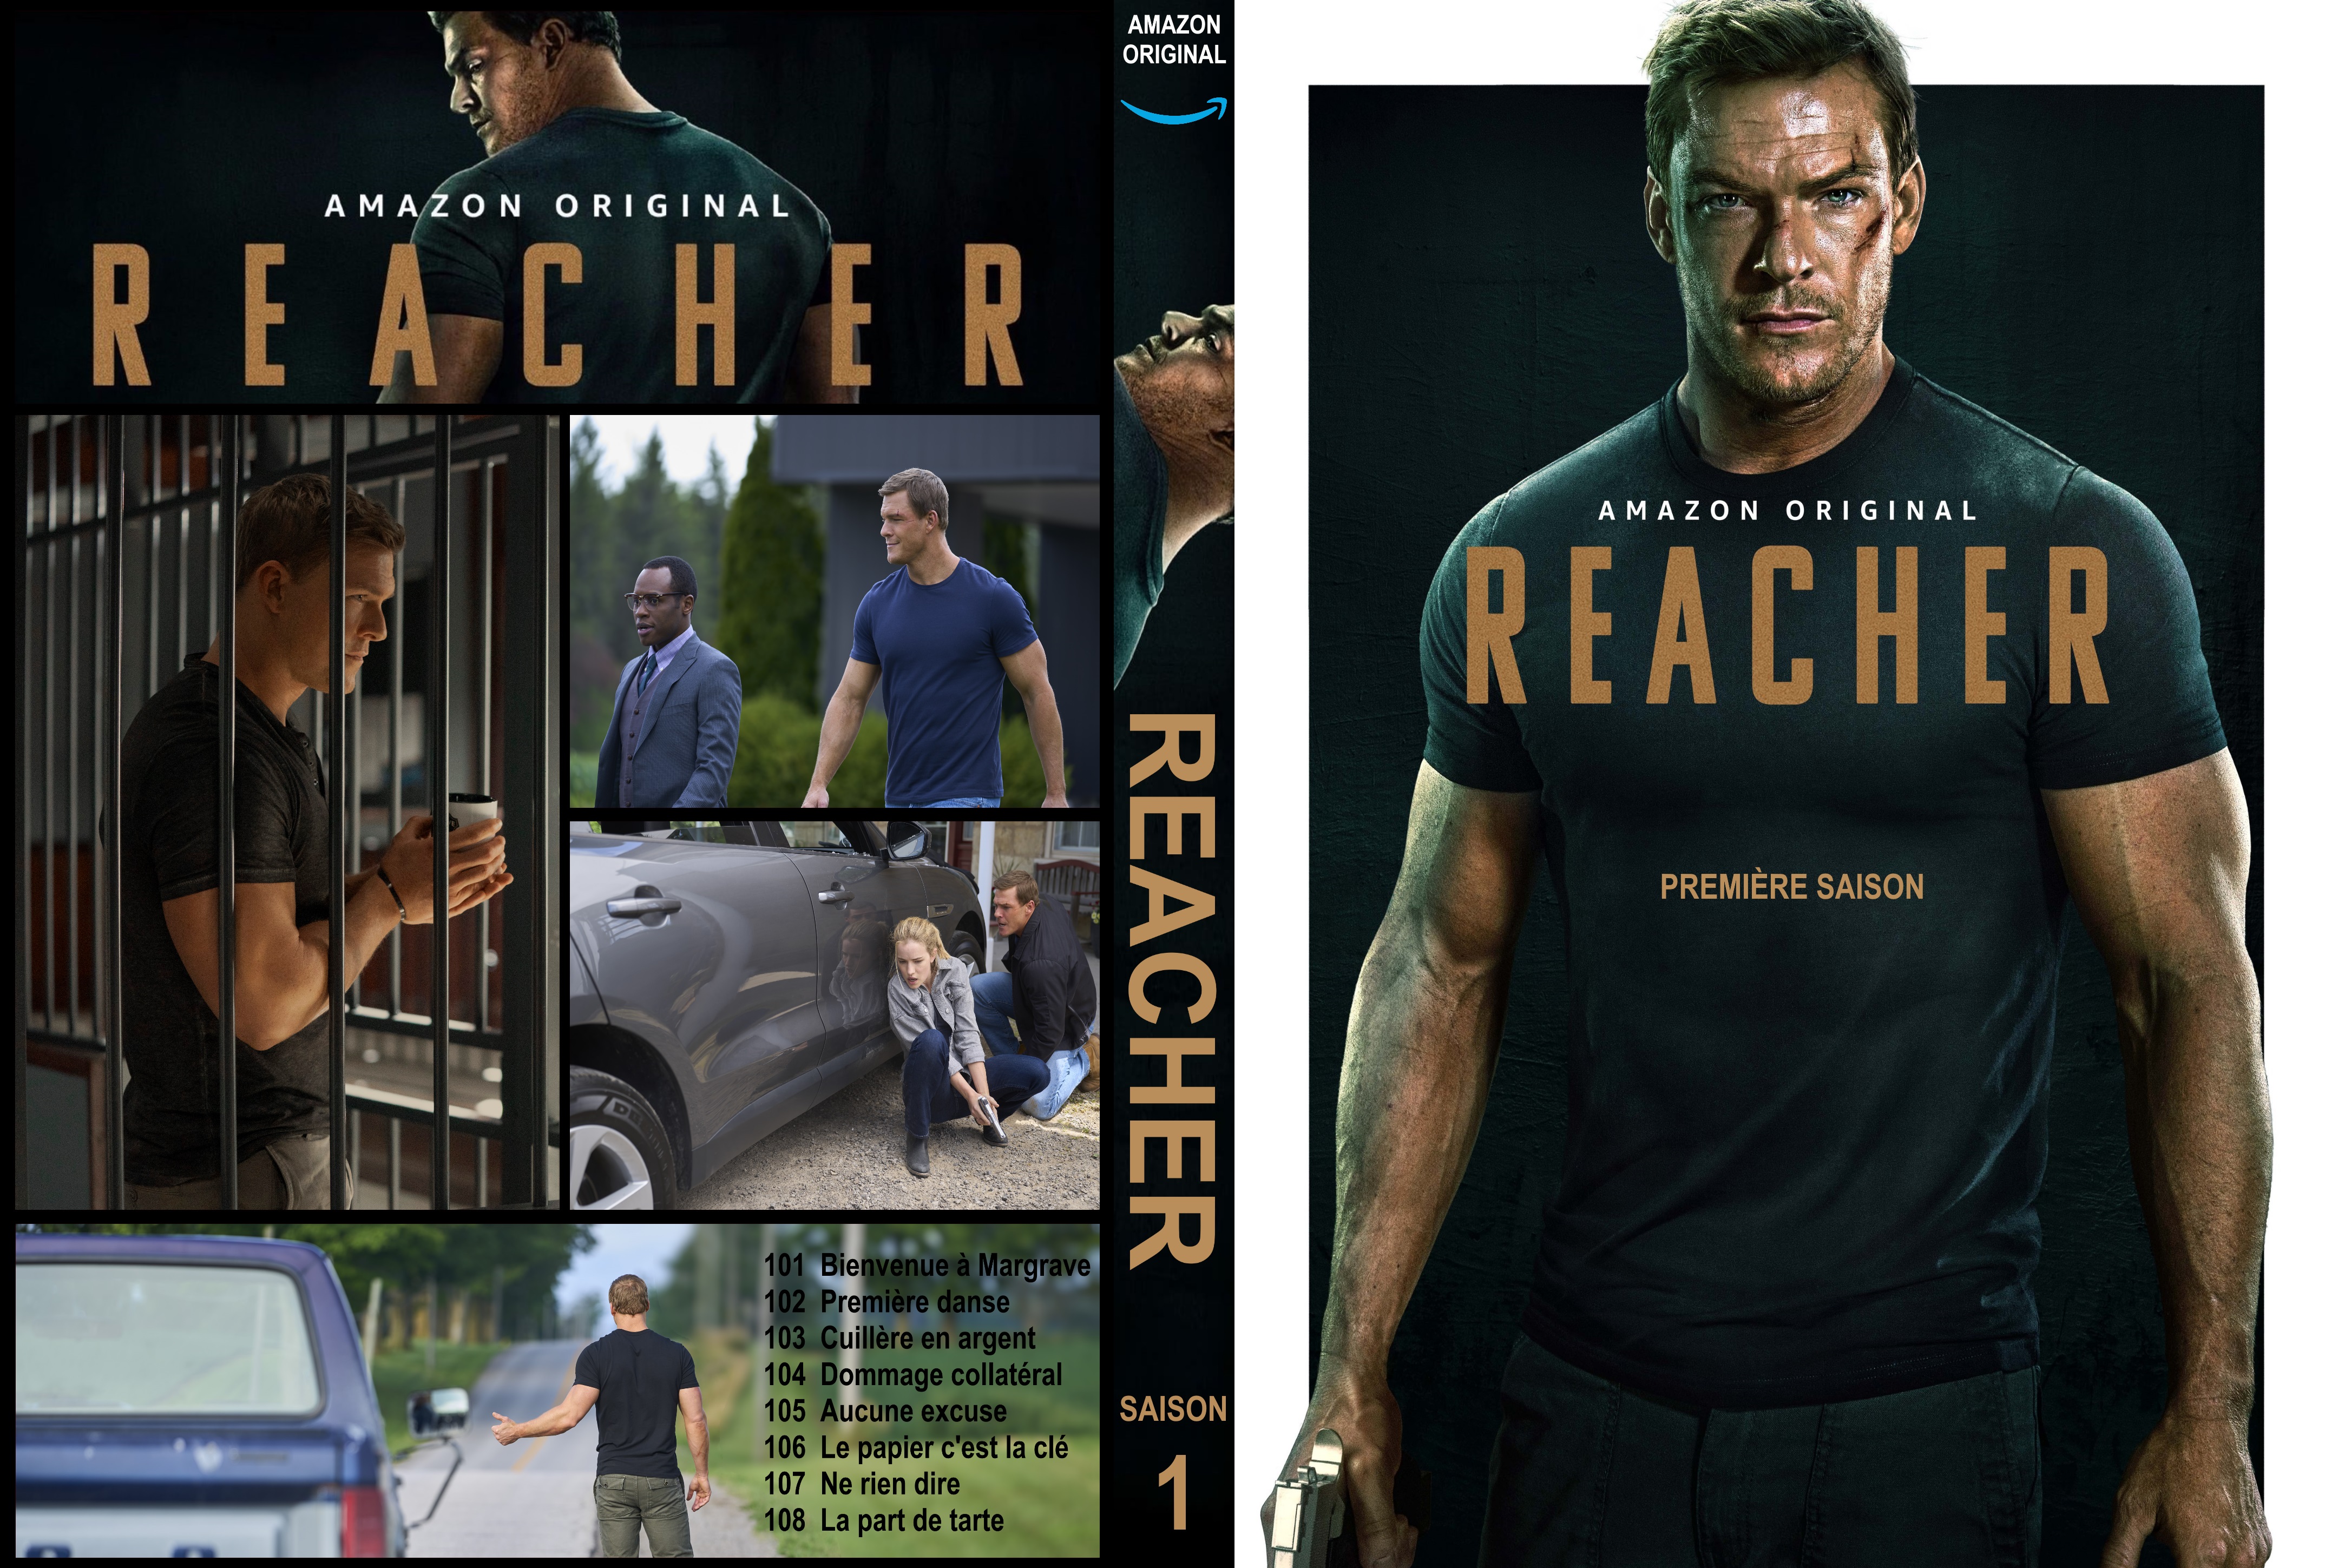 Jaquette DVD Reacher Saison 1 custom